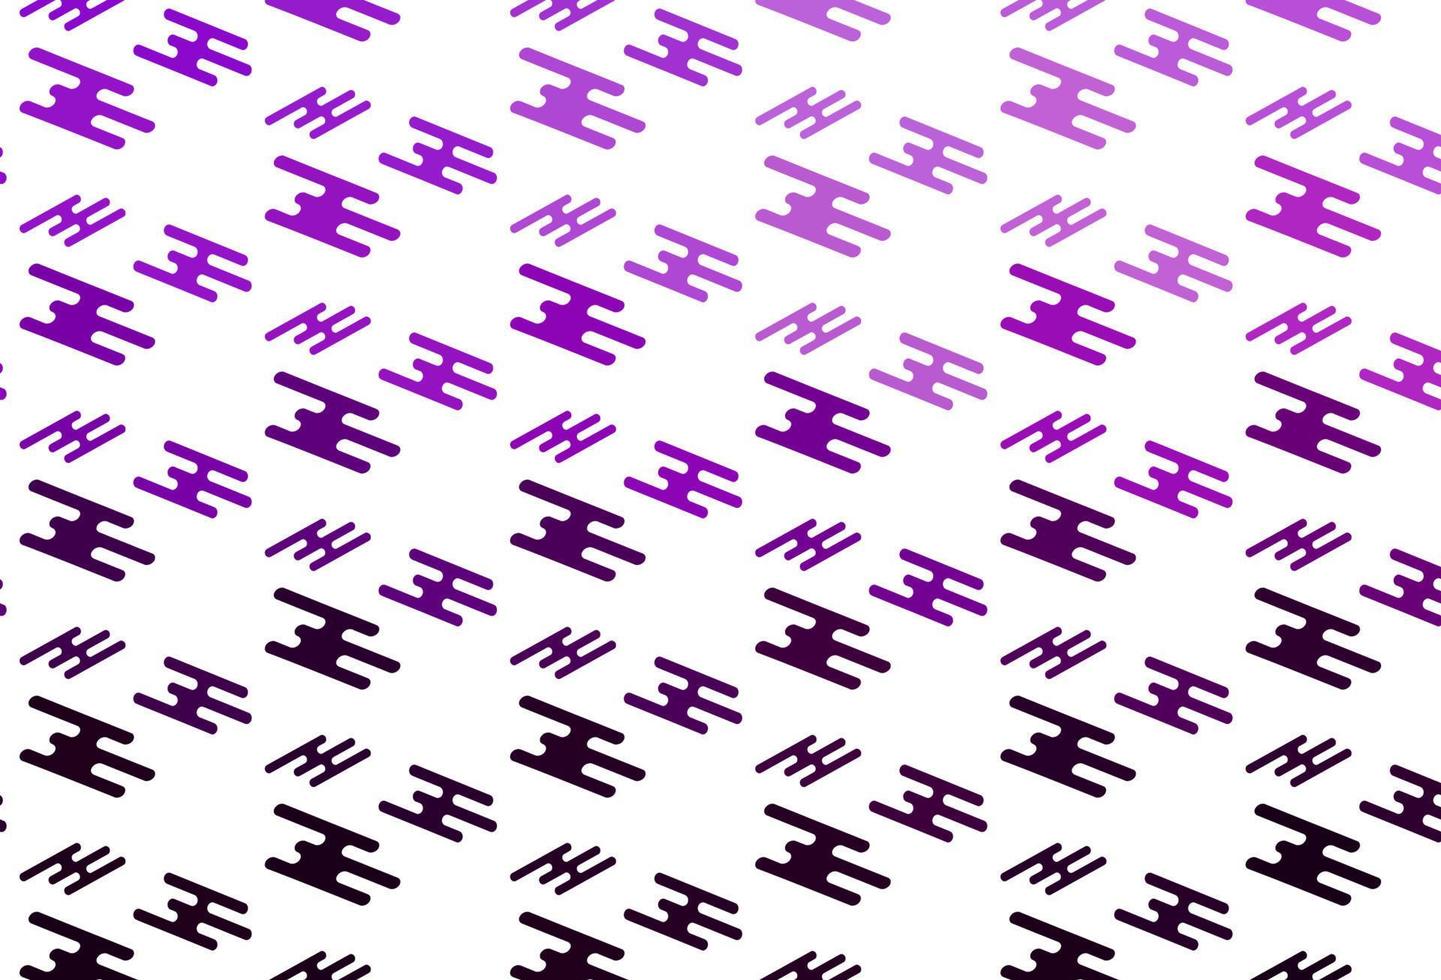 sfondo vettoriale viola chiaro con lunghe linee.